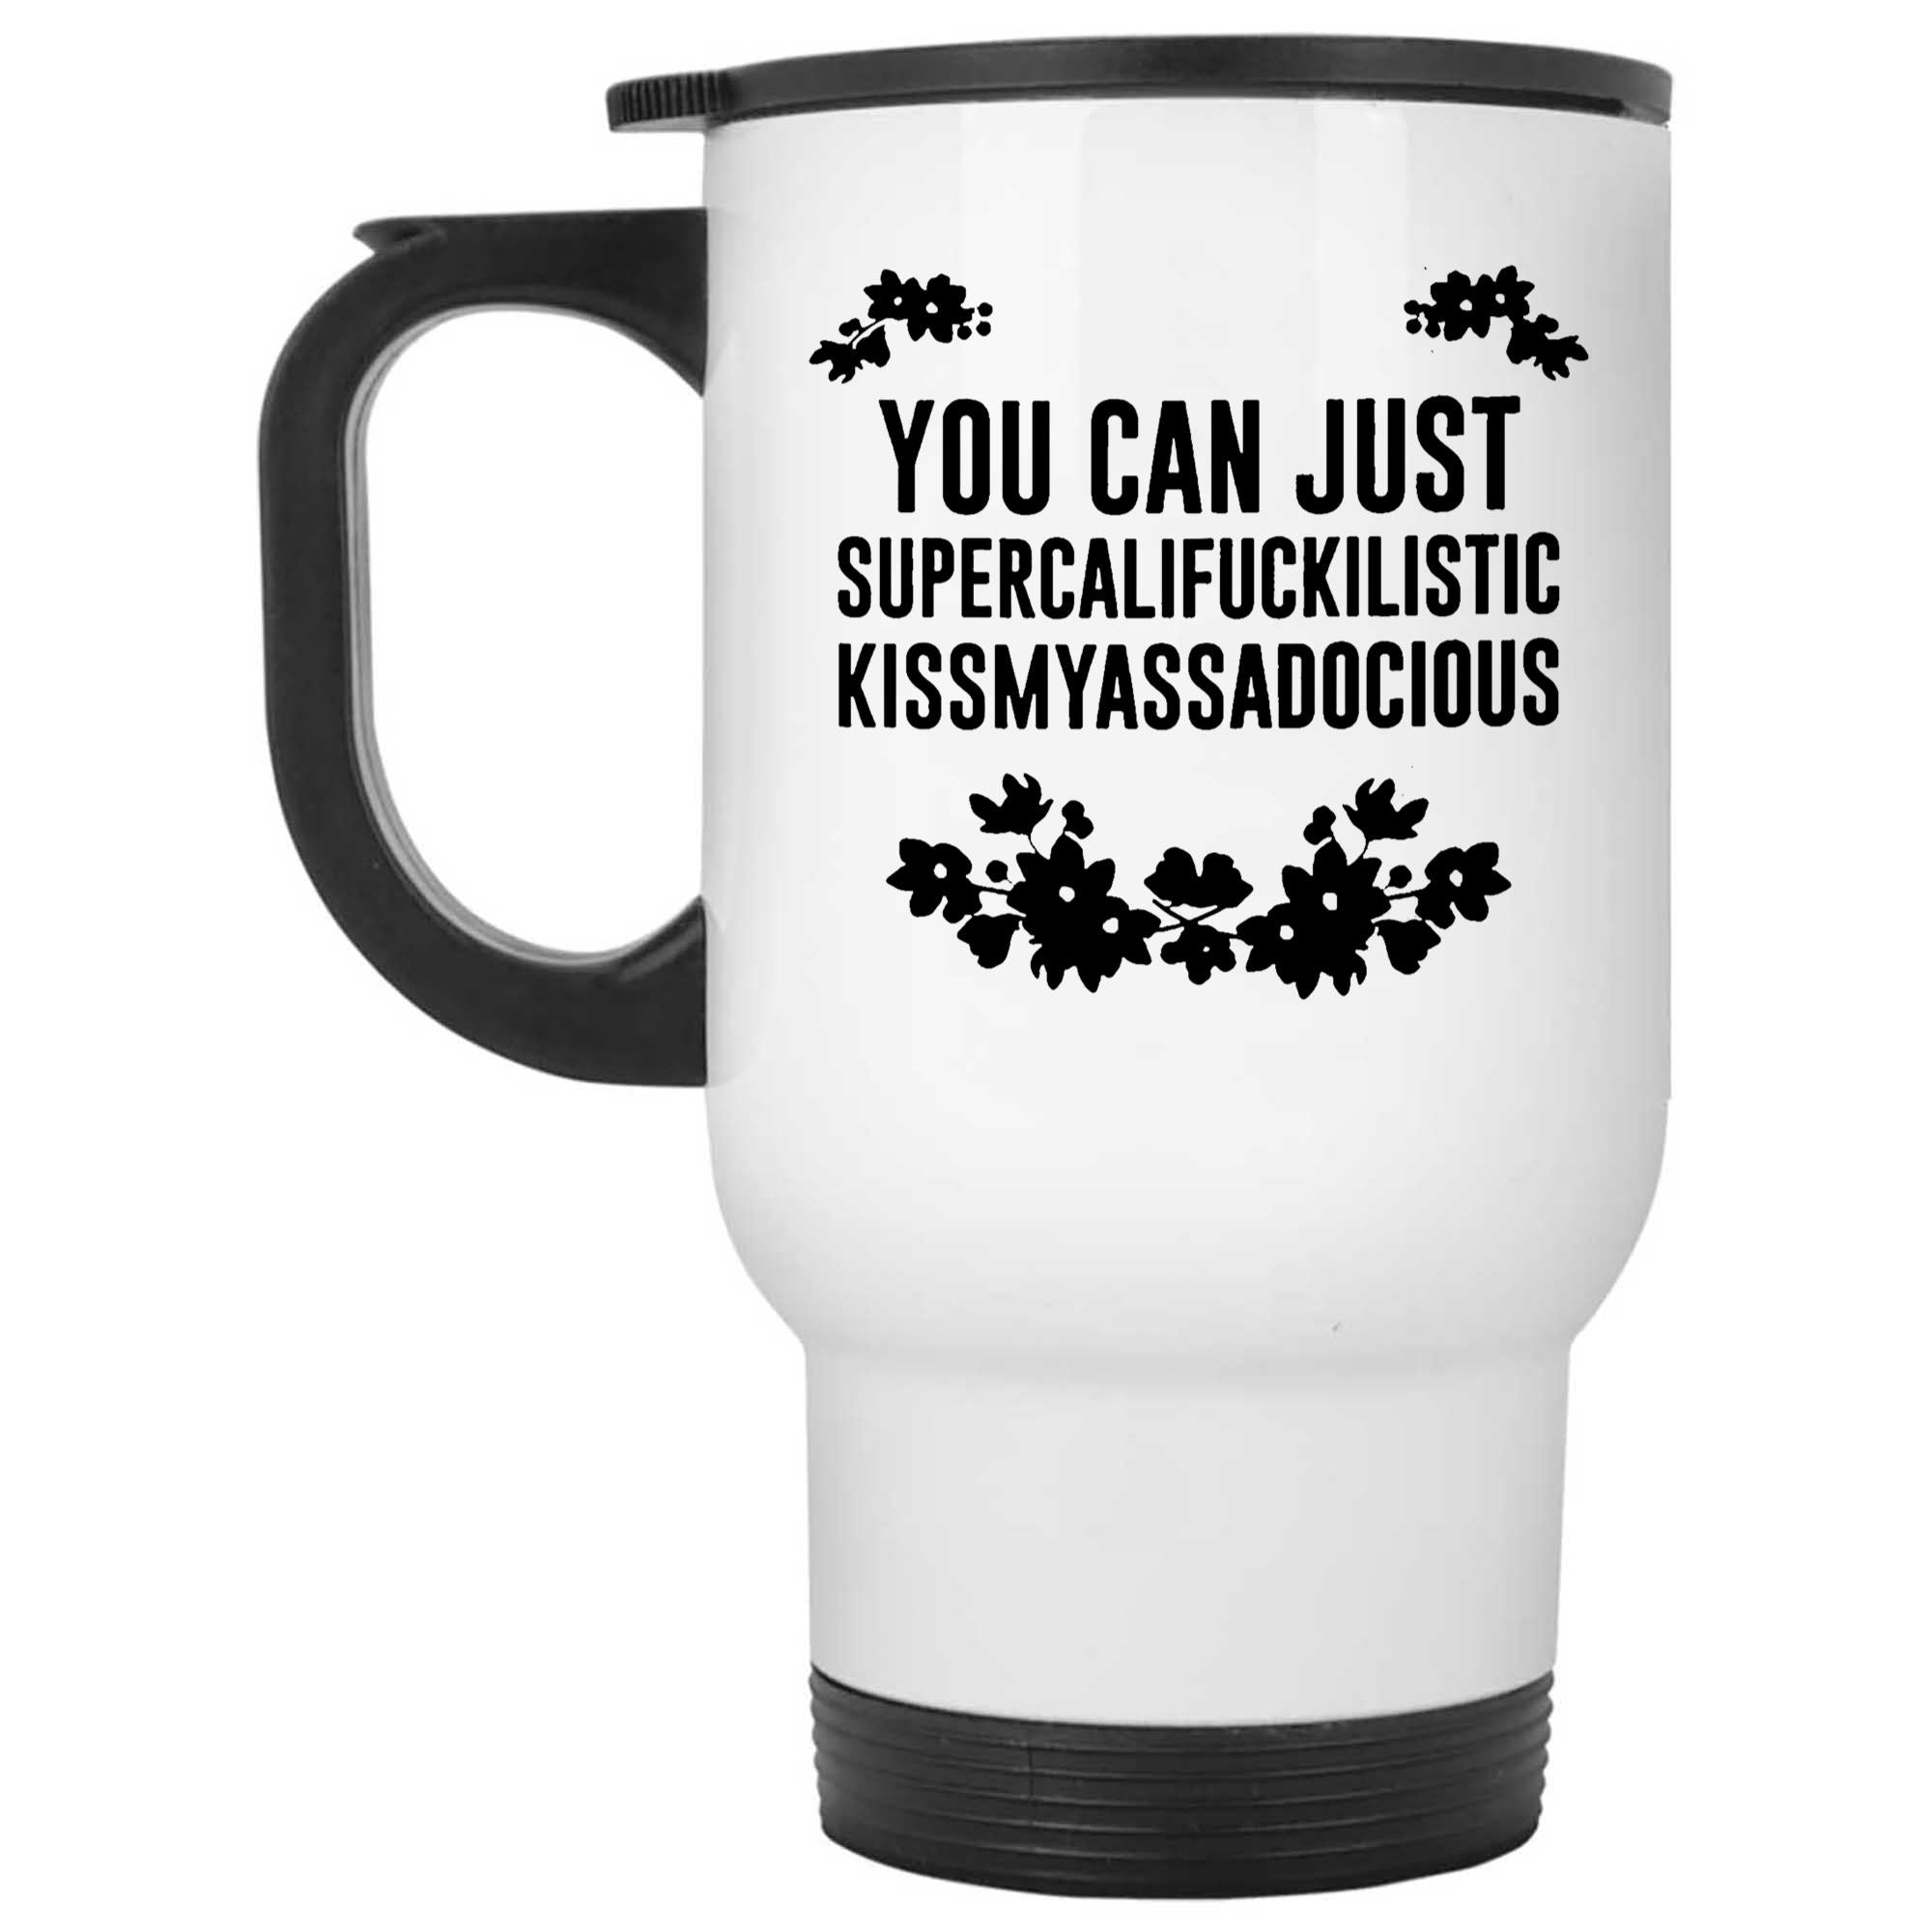 Skitongifts Funny Ceramic Novelty Coffee Mug You Can Just Supercalifragilistic Kissmyassdocious ve60Rtg